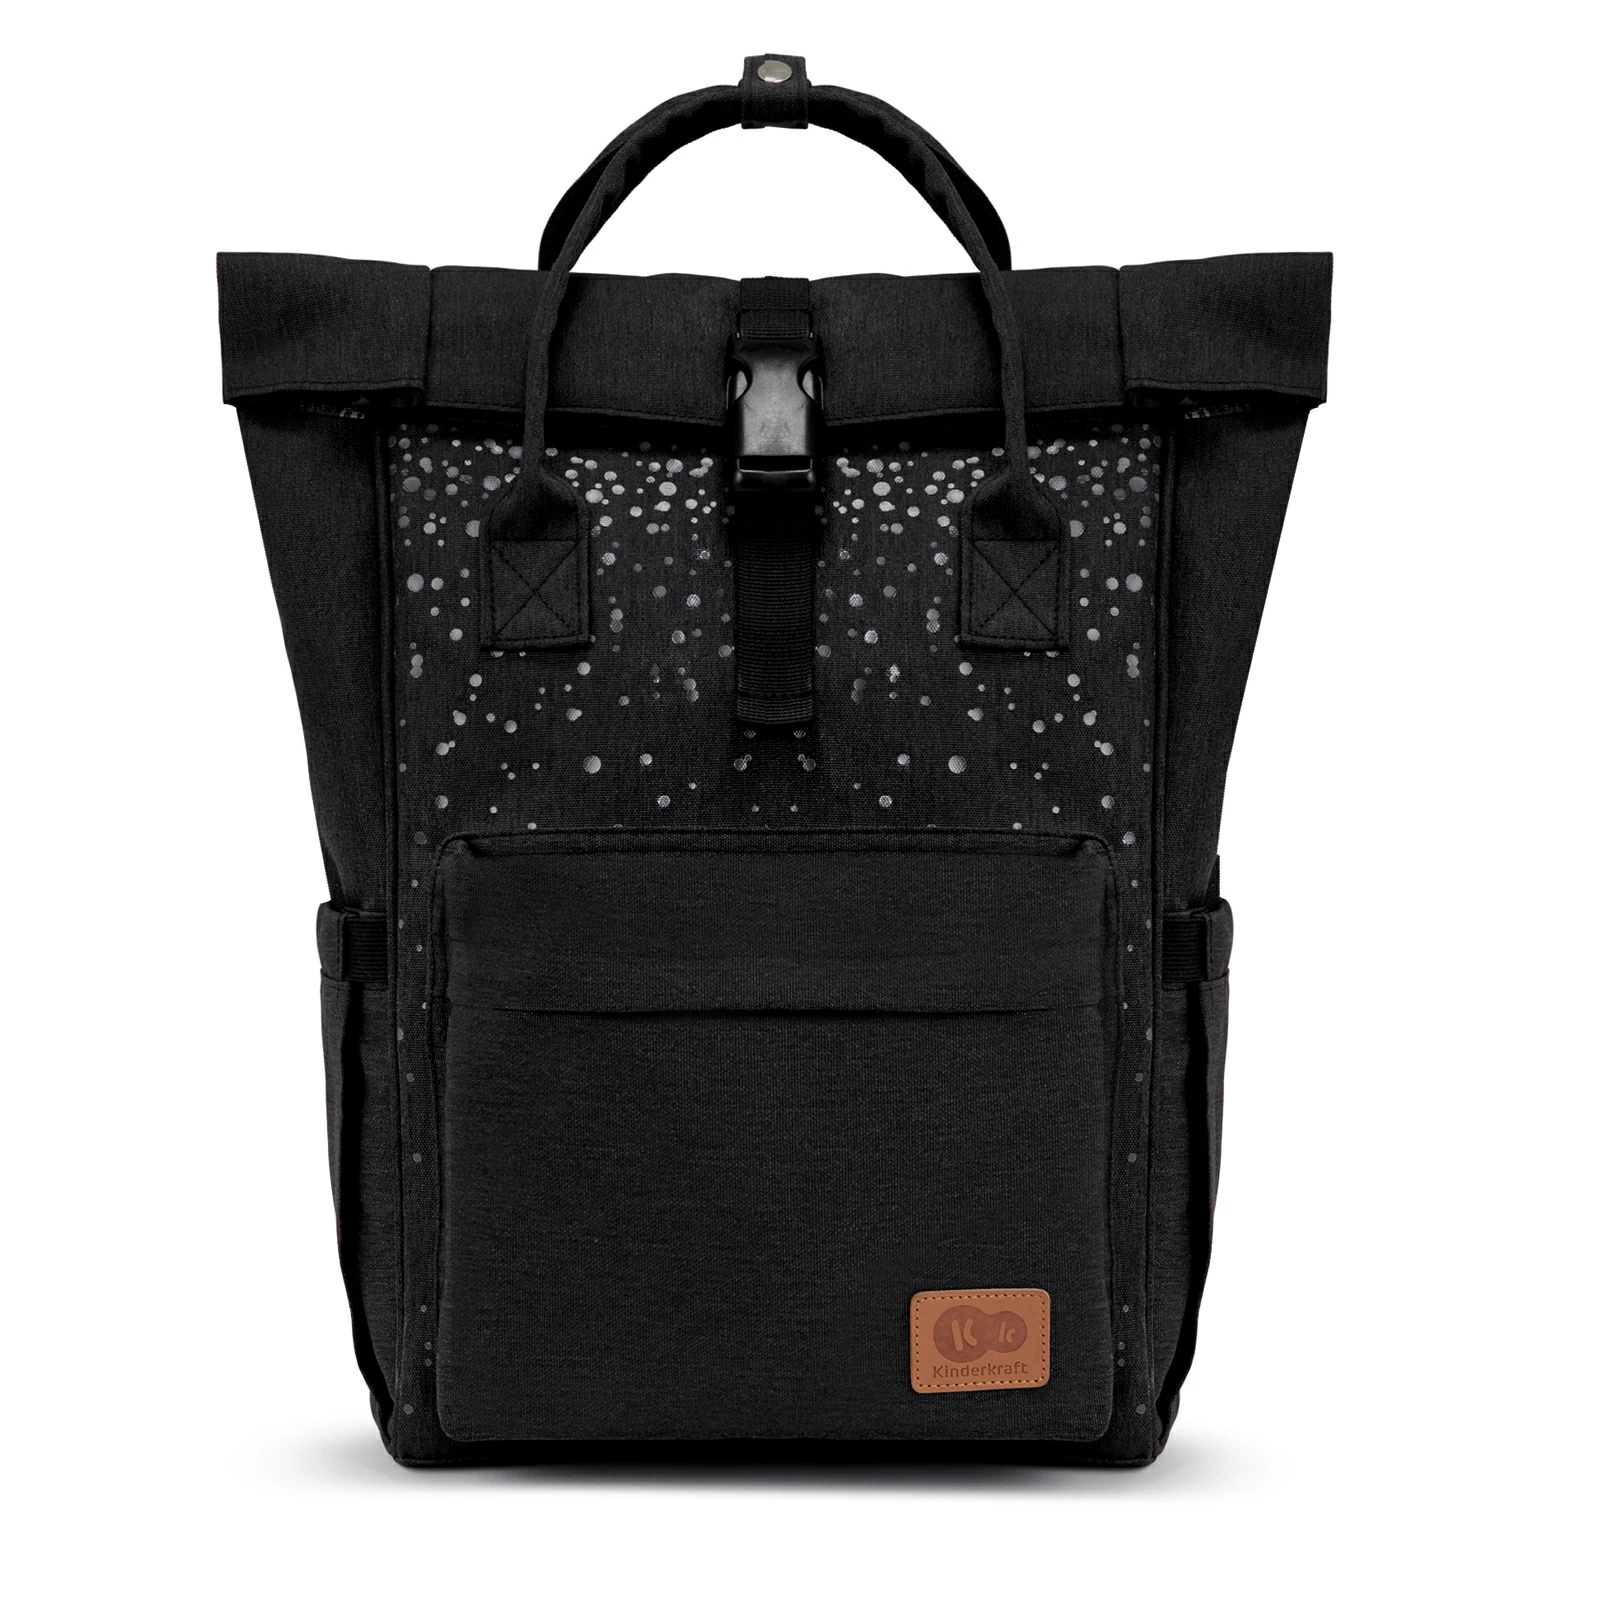 Τσάντα αλλαξιέρα moonpack confetti black